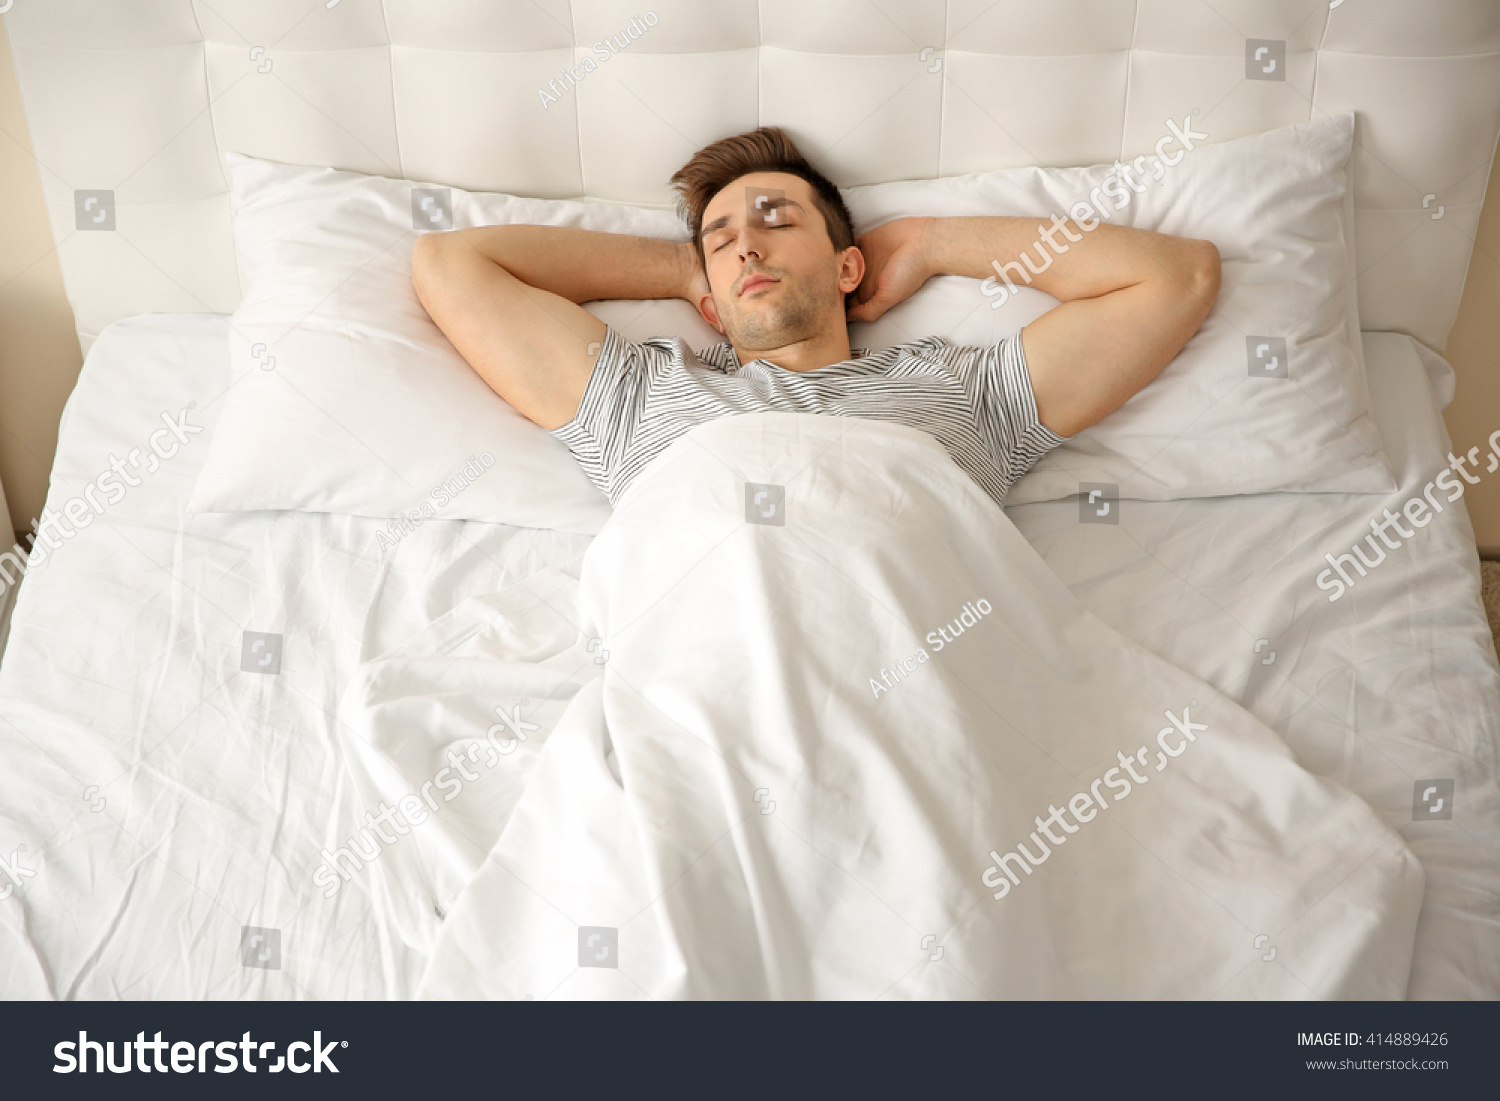 Сплю один на большой кровати. Во сне диван поломанный. Спать во сне на чужой кровати. Половинка кровати пустует картинка.